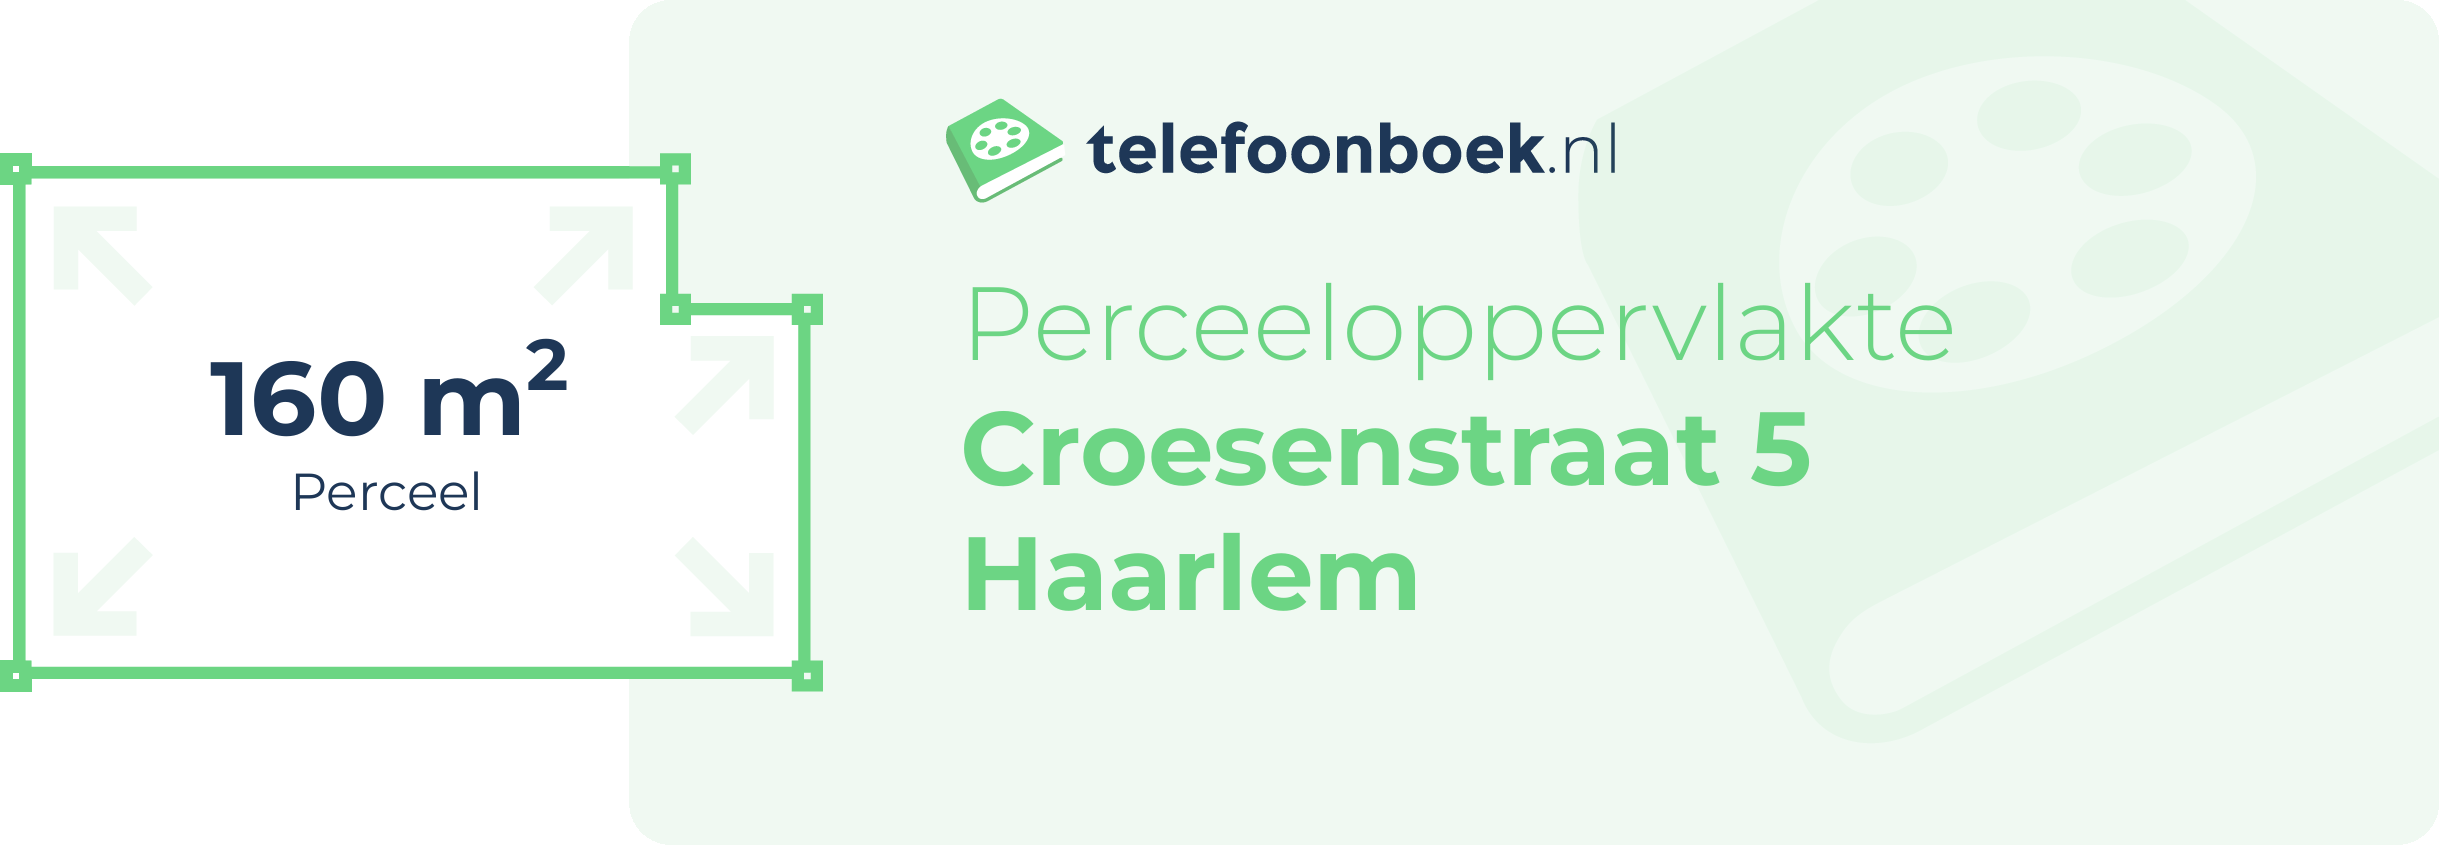 Perceeloppervlakte Croesenstraat 5 Haarlem